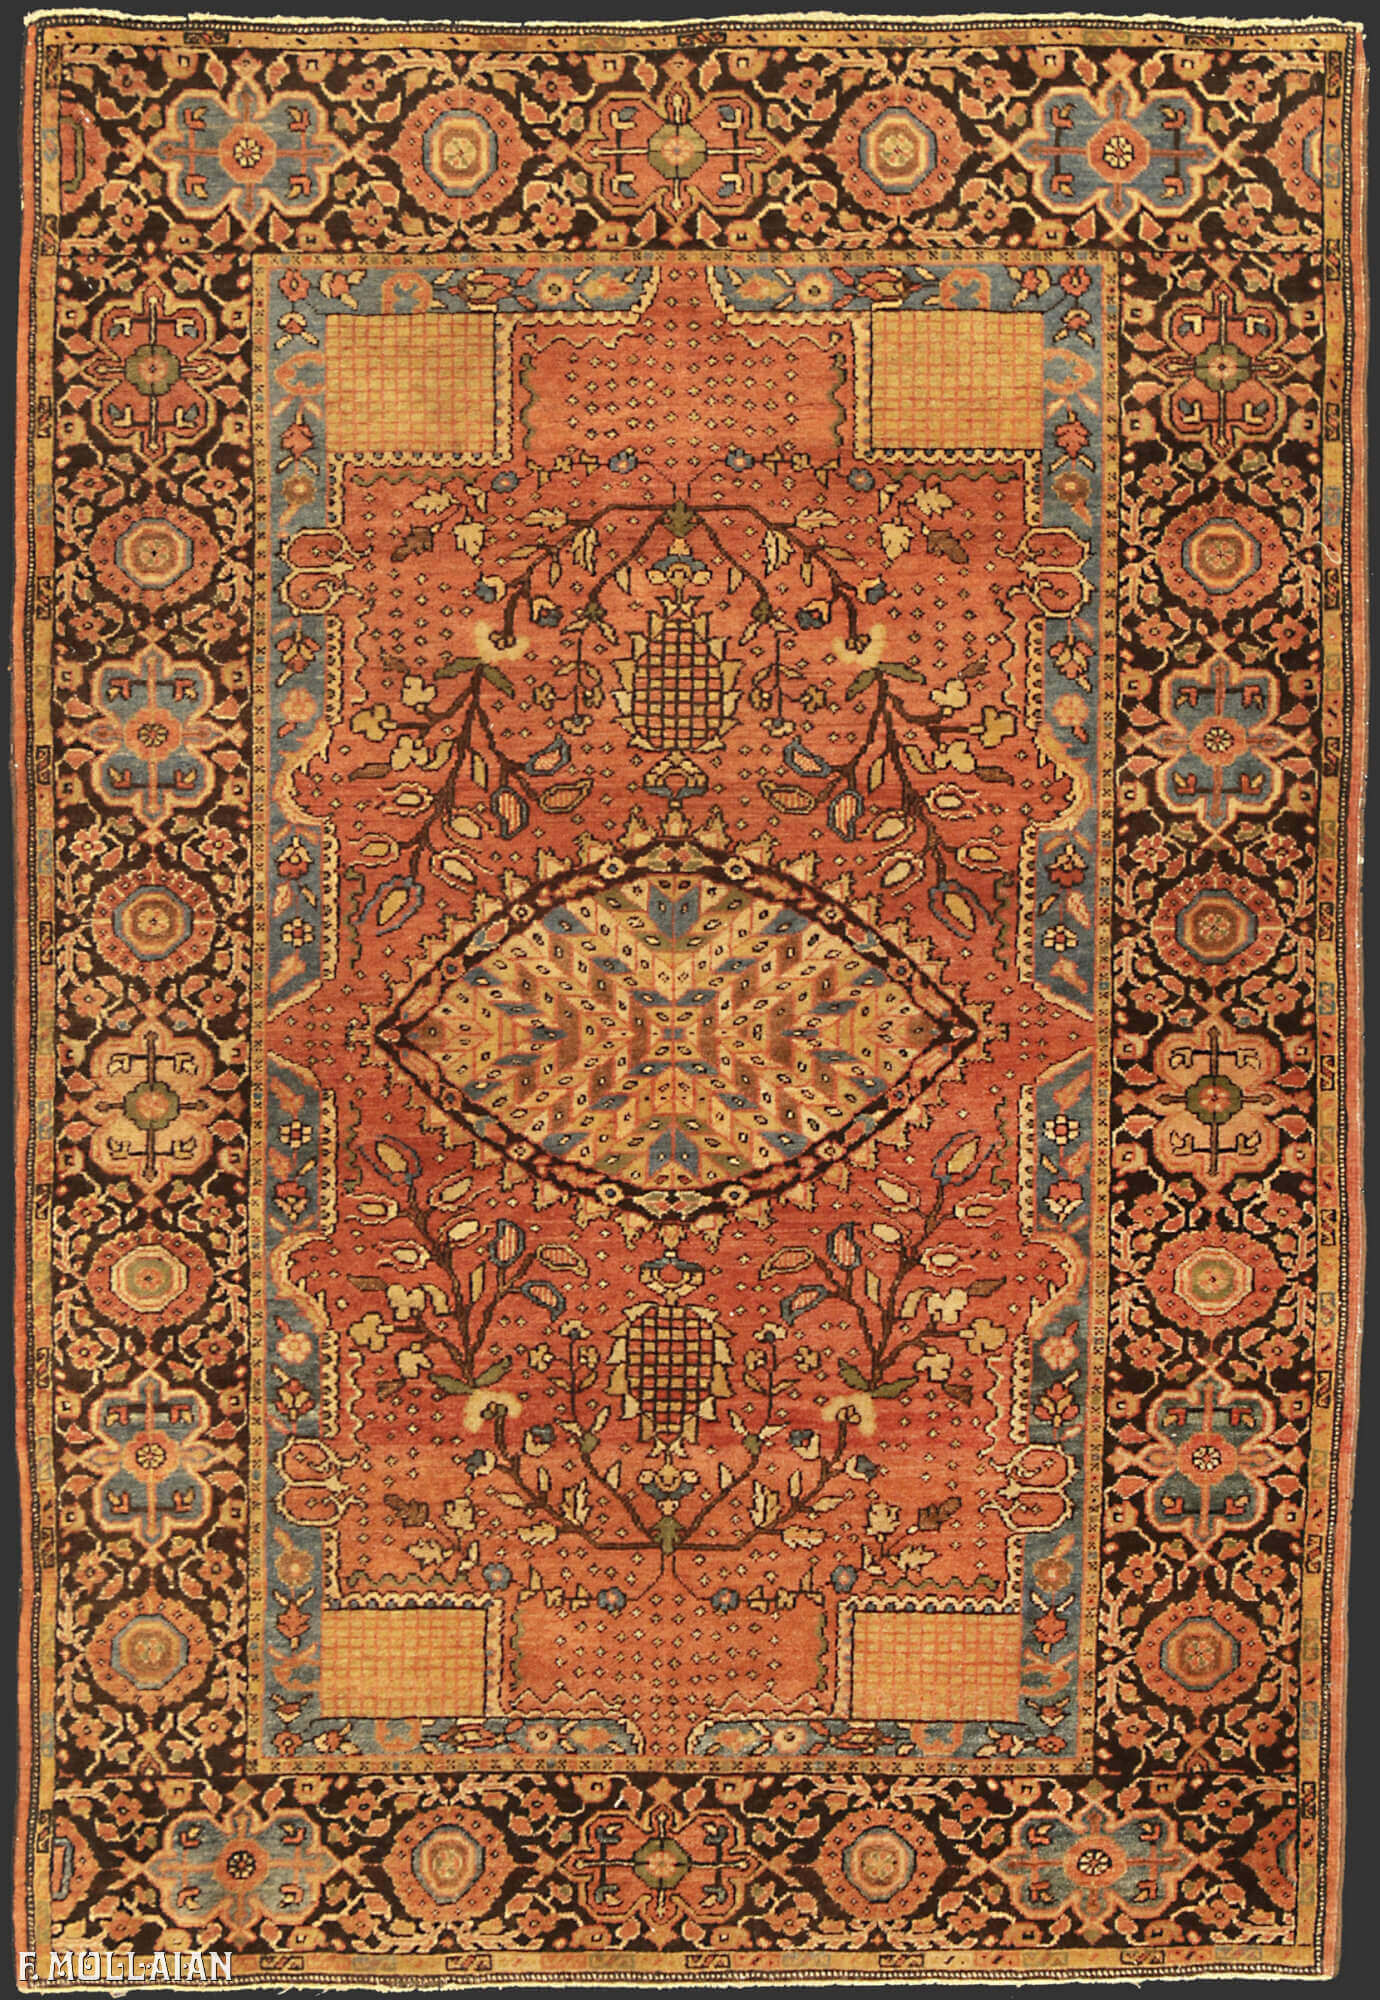 Antique Persian Saruk Farahan Rug n°:30592032